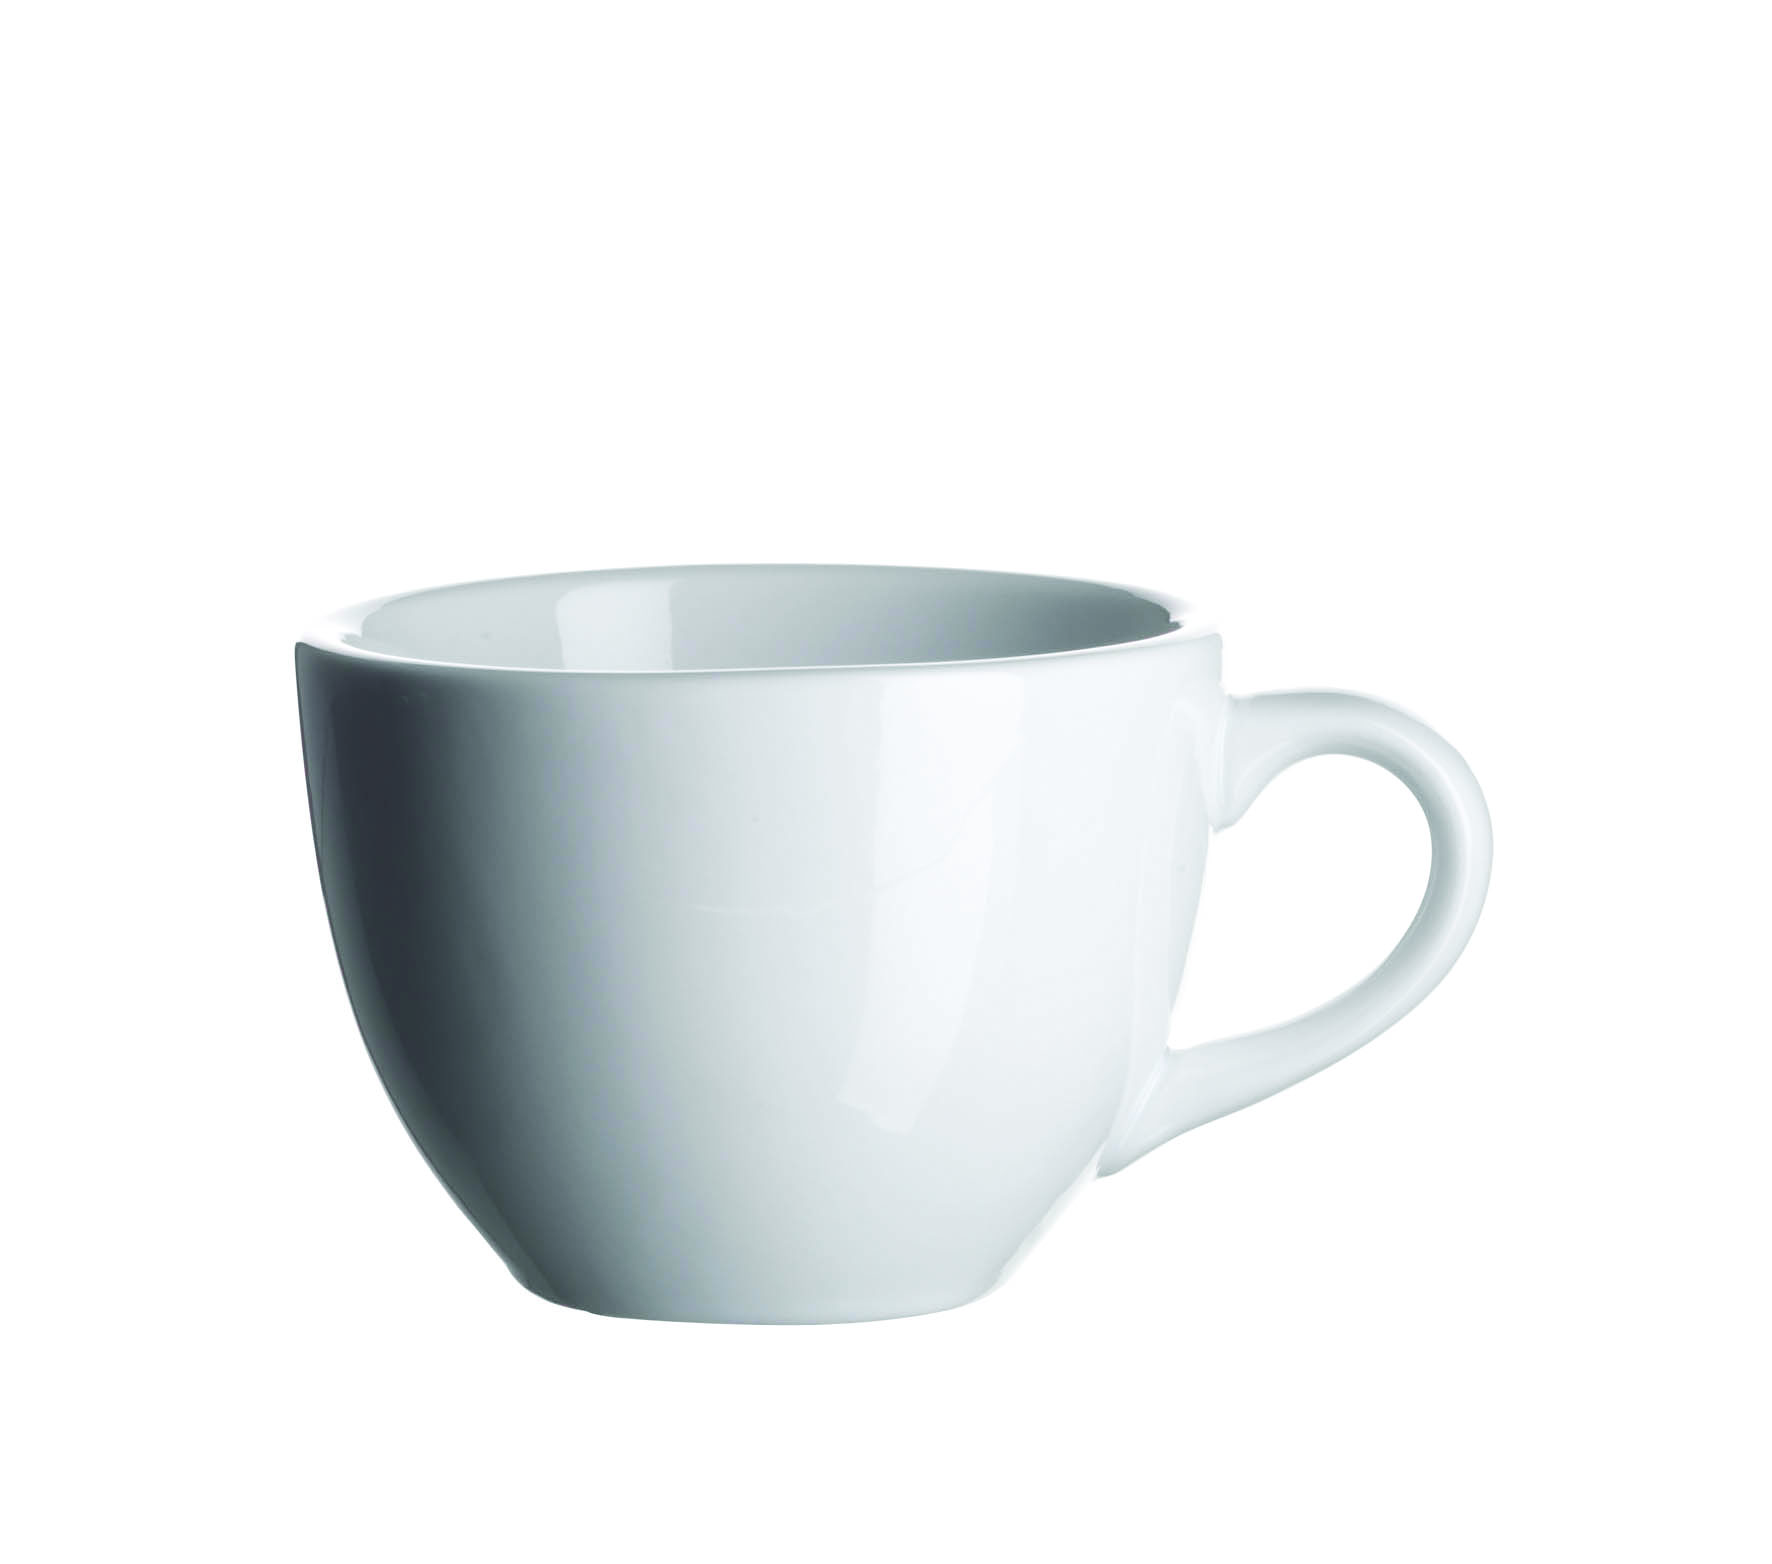 Kaffeetasse 18cl weiß | Mäser Colombia Gastronomie-Kaufhaus Porzellan